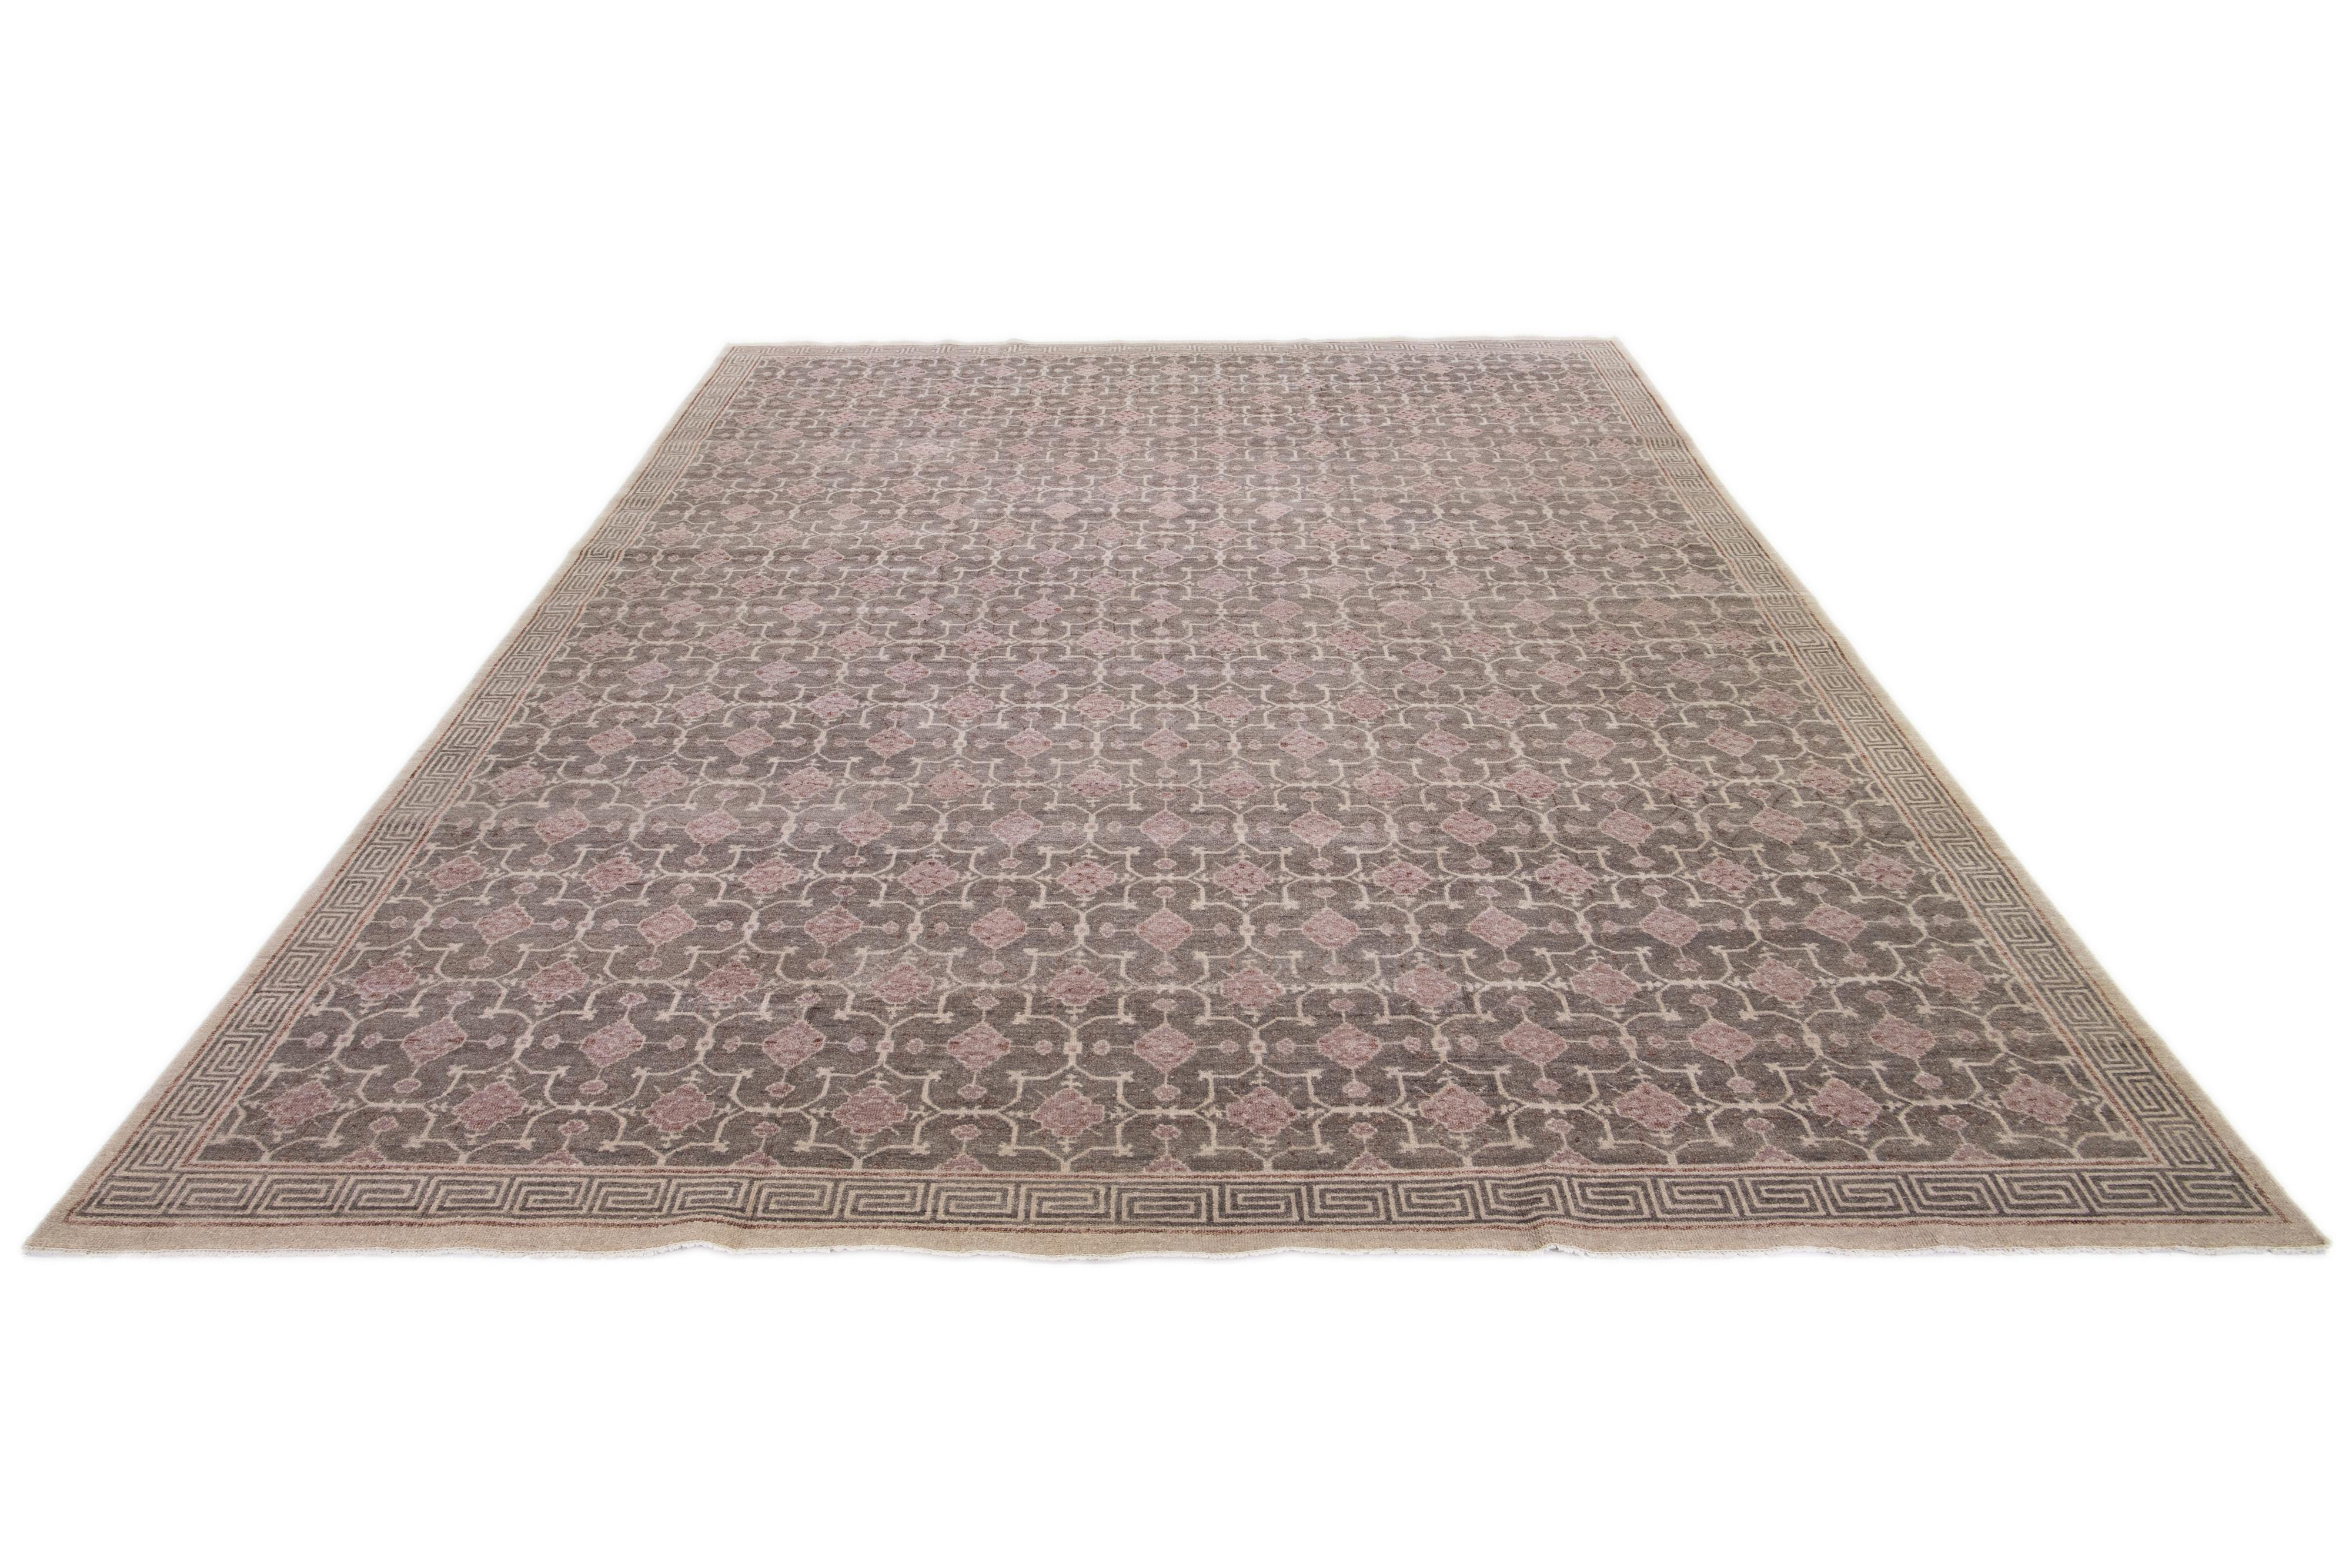 Ein Khotan-Wollteppich in einem grauen Farbfeld mit miteinander verbundenen Rosettenmustern. Dieses handgeknüpfte moderne Stück hat beige und braune Akzente, die das Design ergänzen.

Dieser Teppich misst 11'10